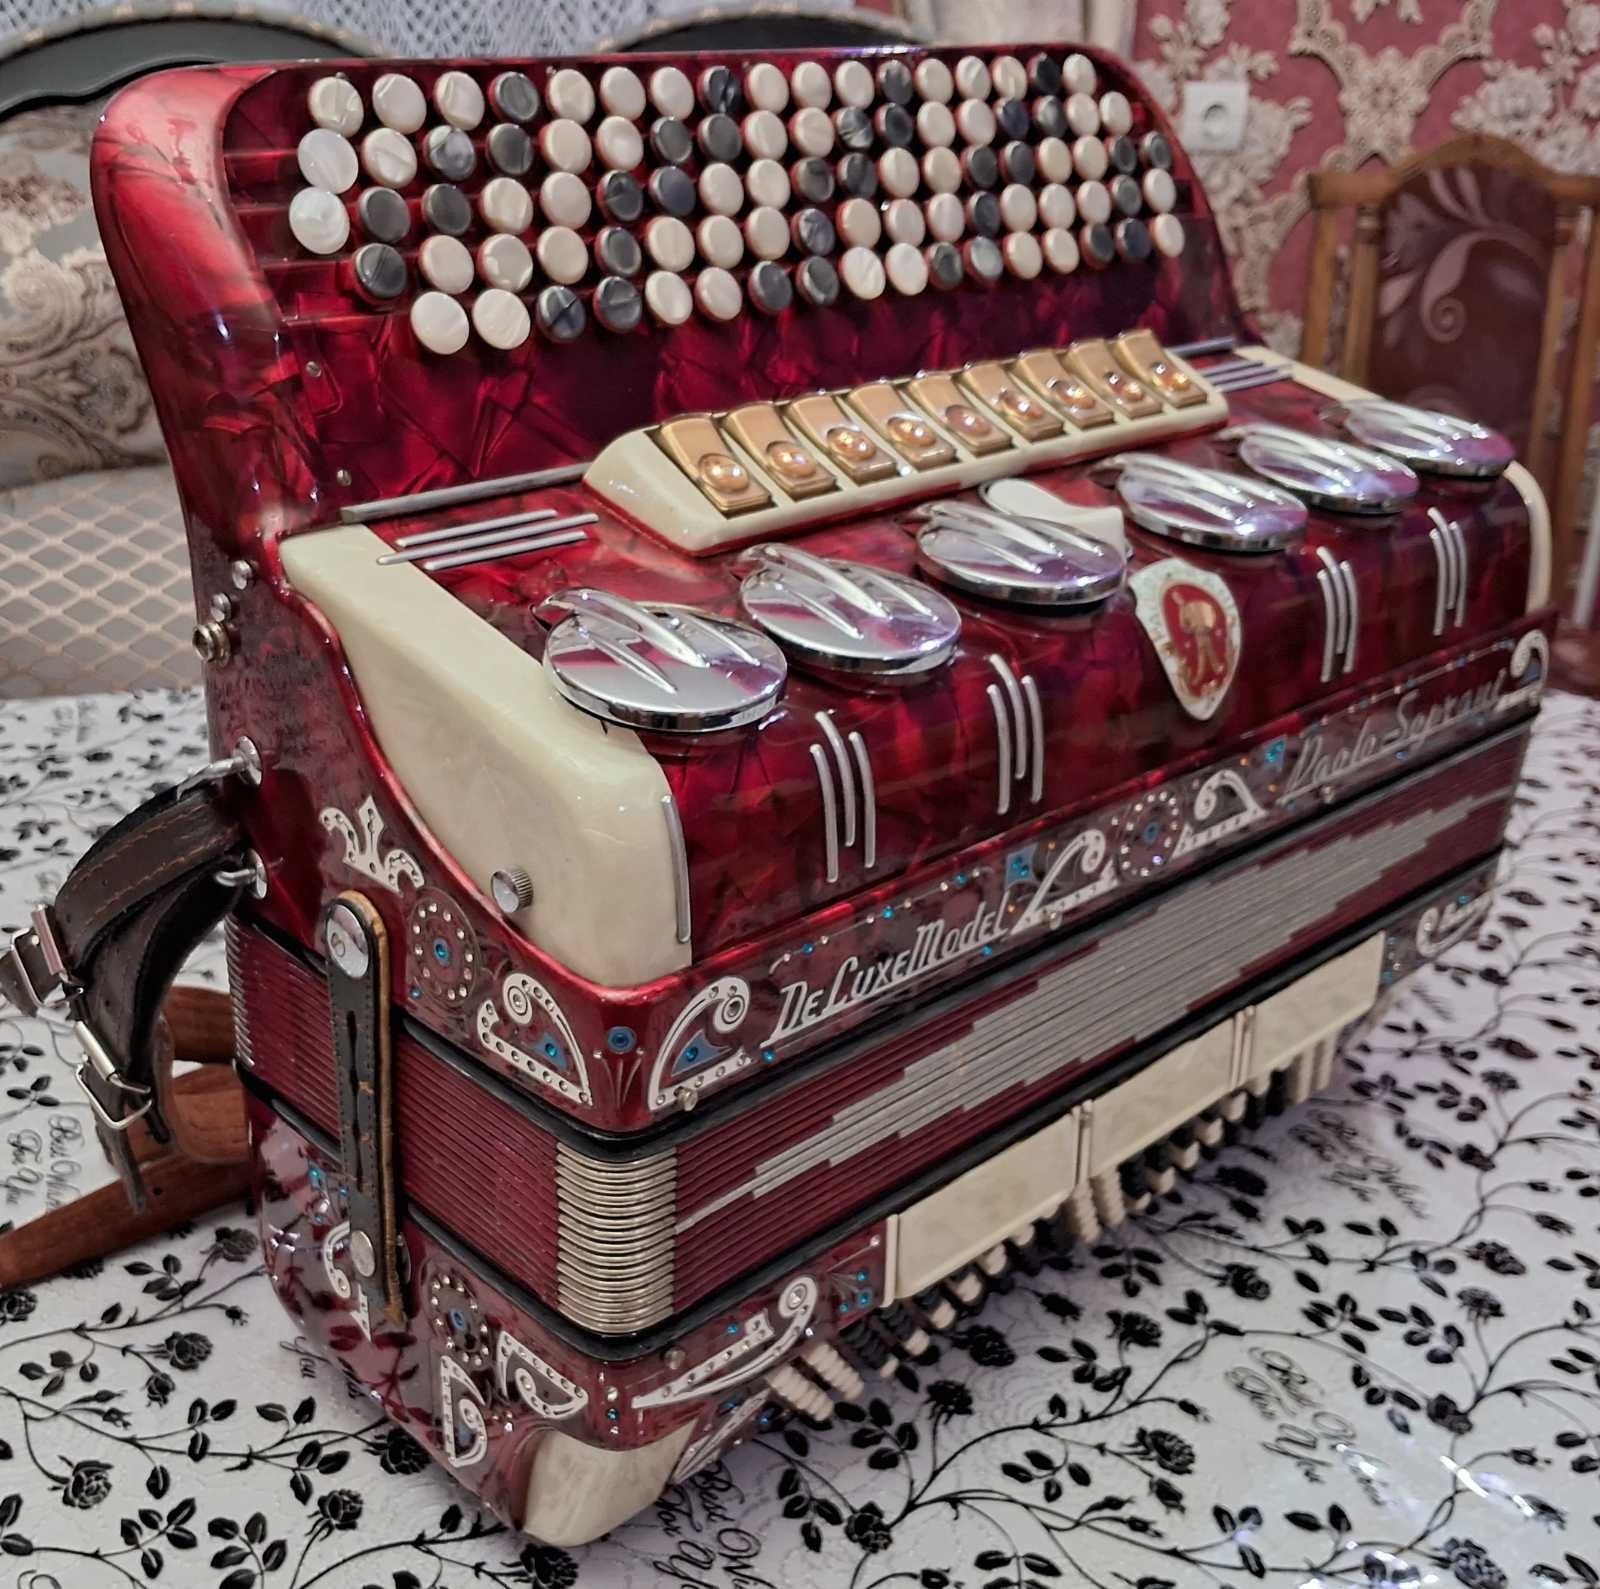 Баян пятирядний італійський PAOLO SOPRANI , акордеон аккордеон